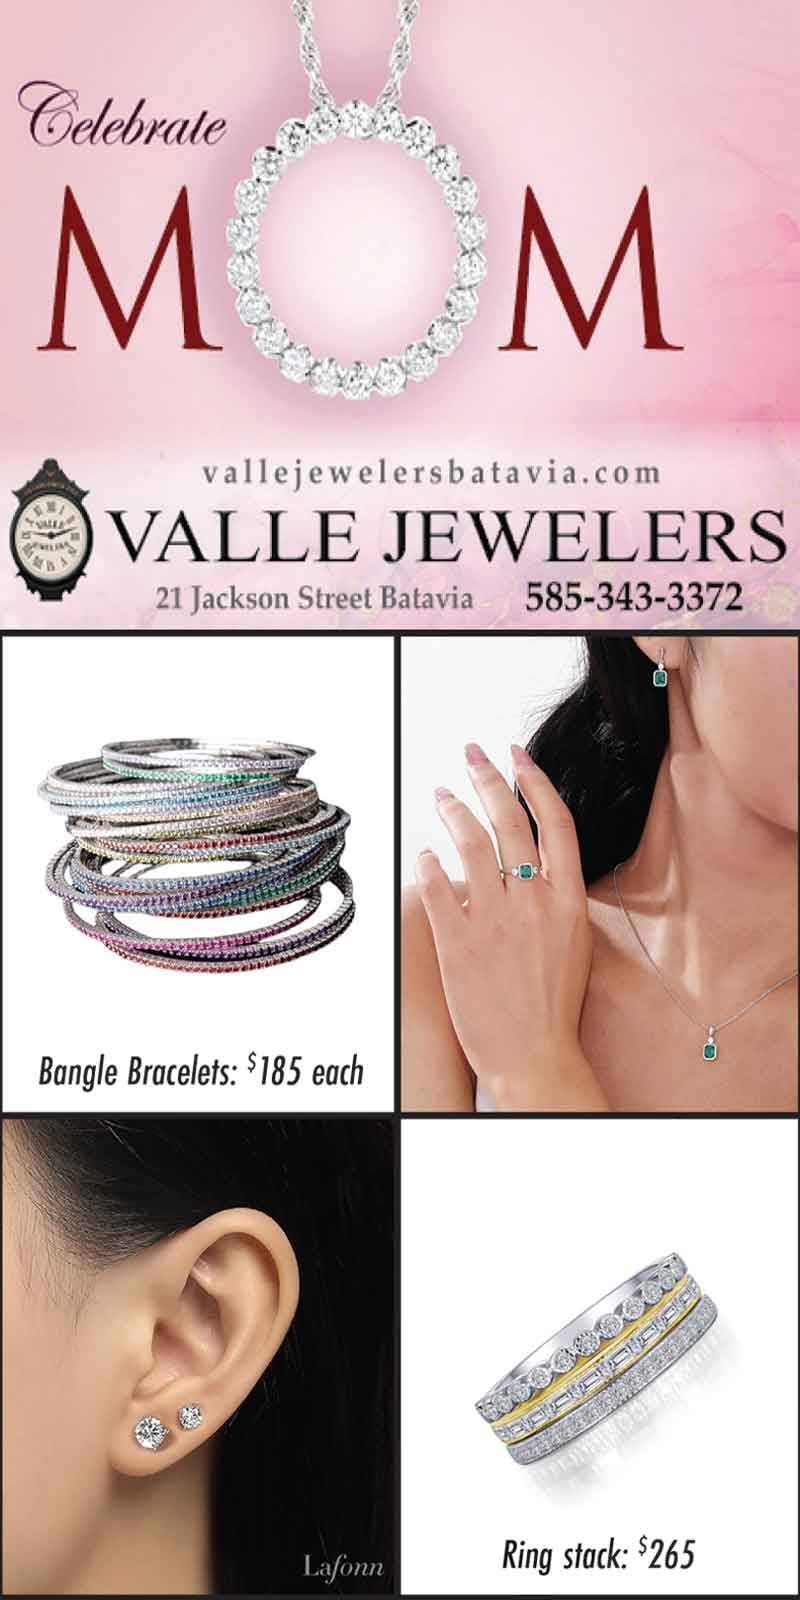 Valle Jewelers